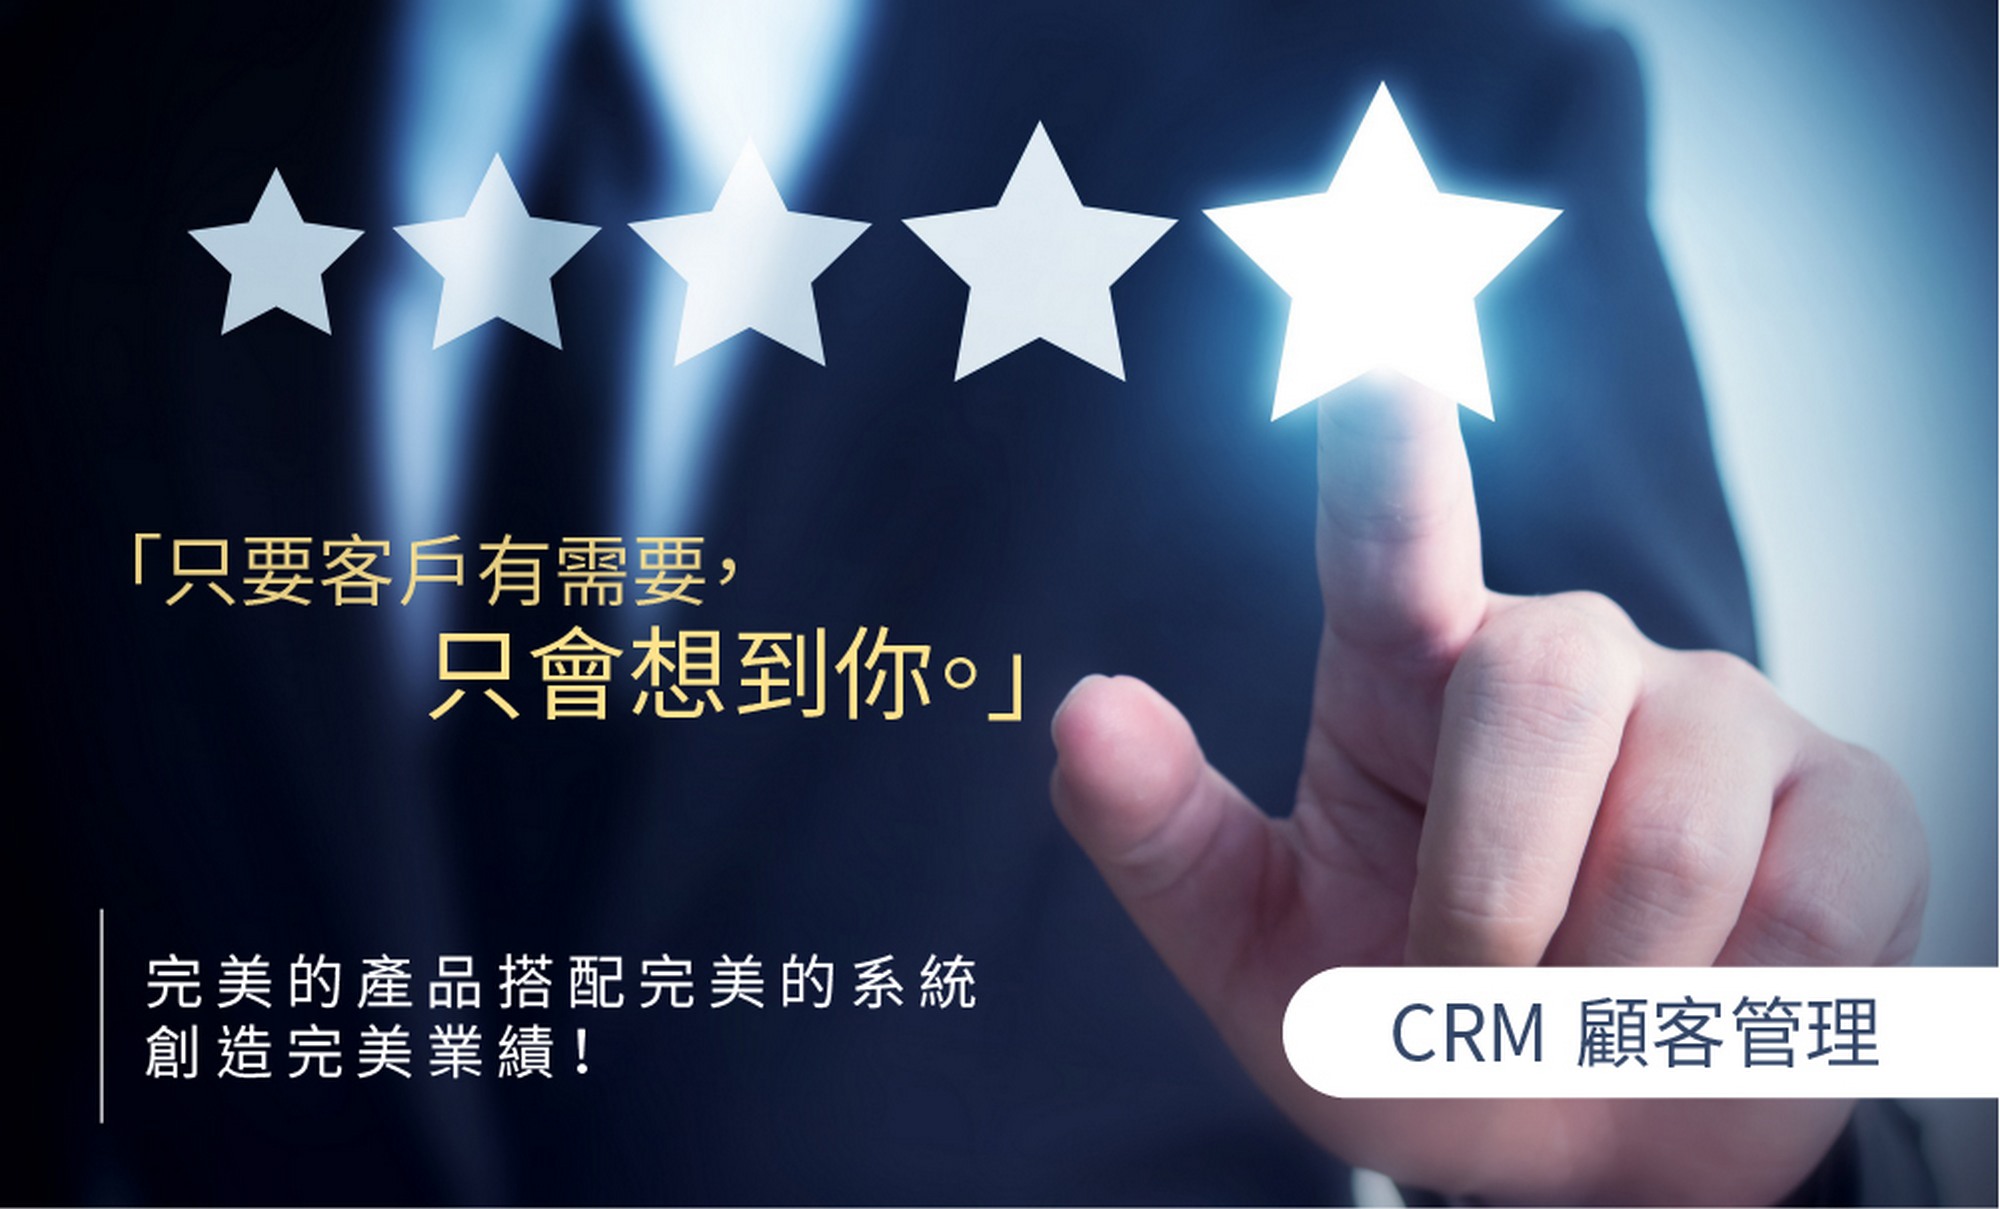 顧客管理,CRM,客戶管理,客戶關係管理,CRM系統,CRM管理,客資管理